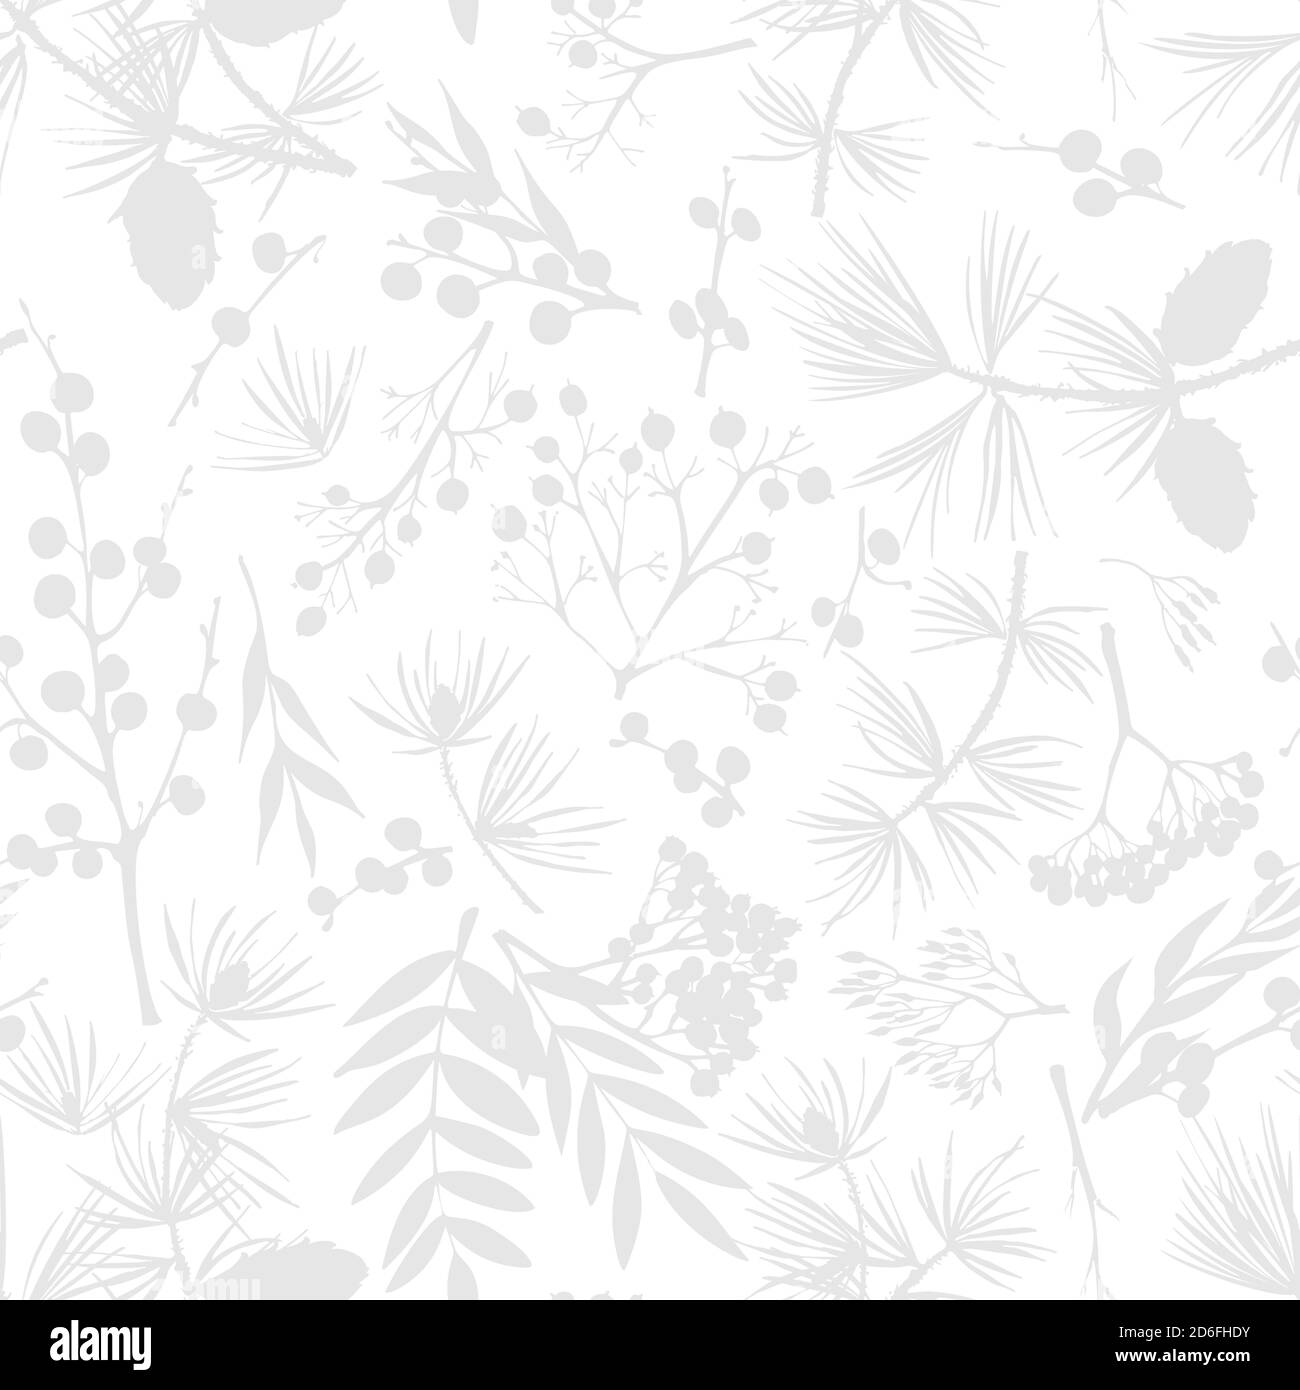 Motif de noël d'hiver sans couture avec brindilles, baies et feuilles de plantes isolées sur fond blanc. Croquis botanique vintage dessiné à la main Illustration de Vecteur